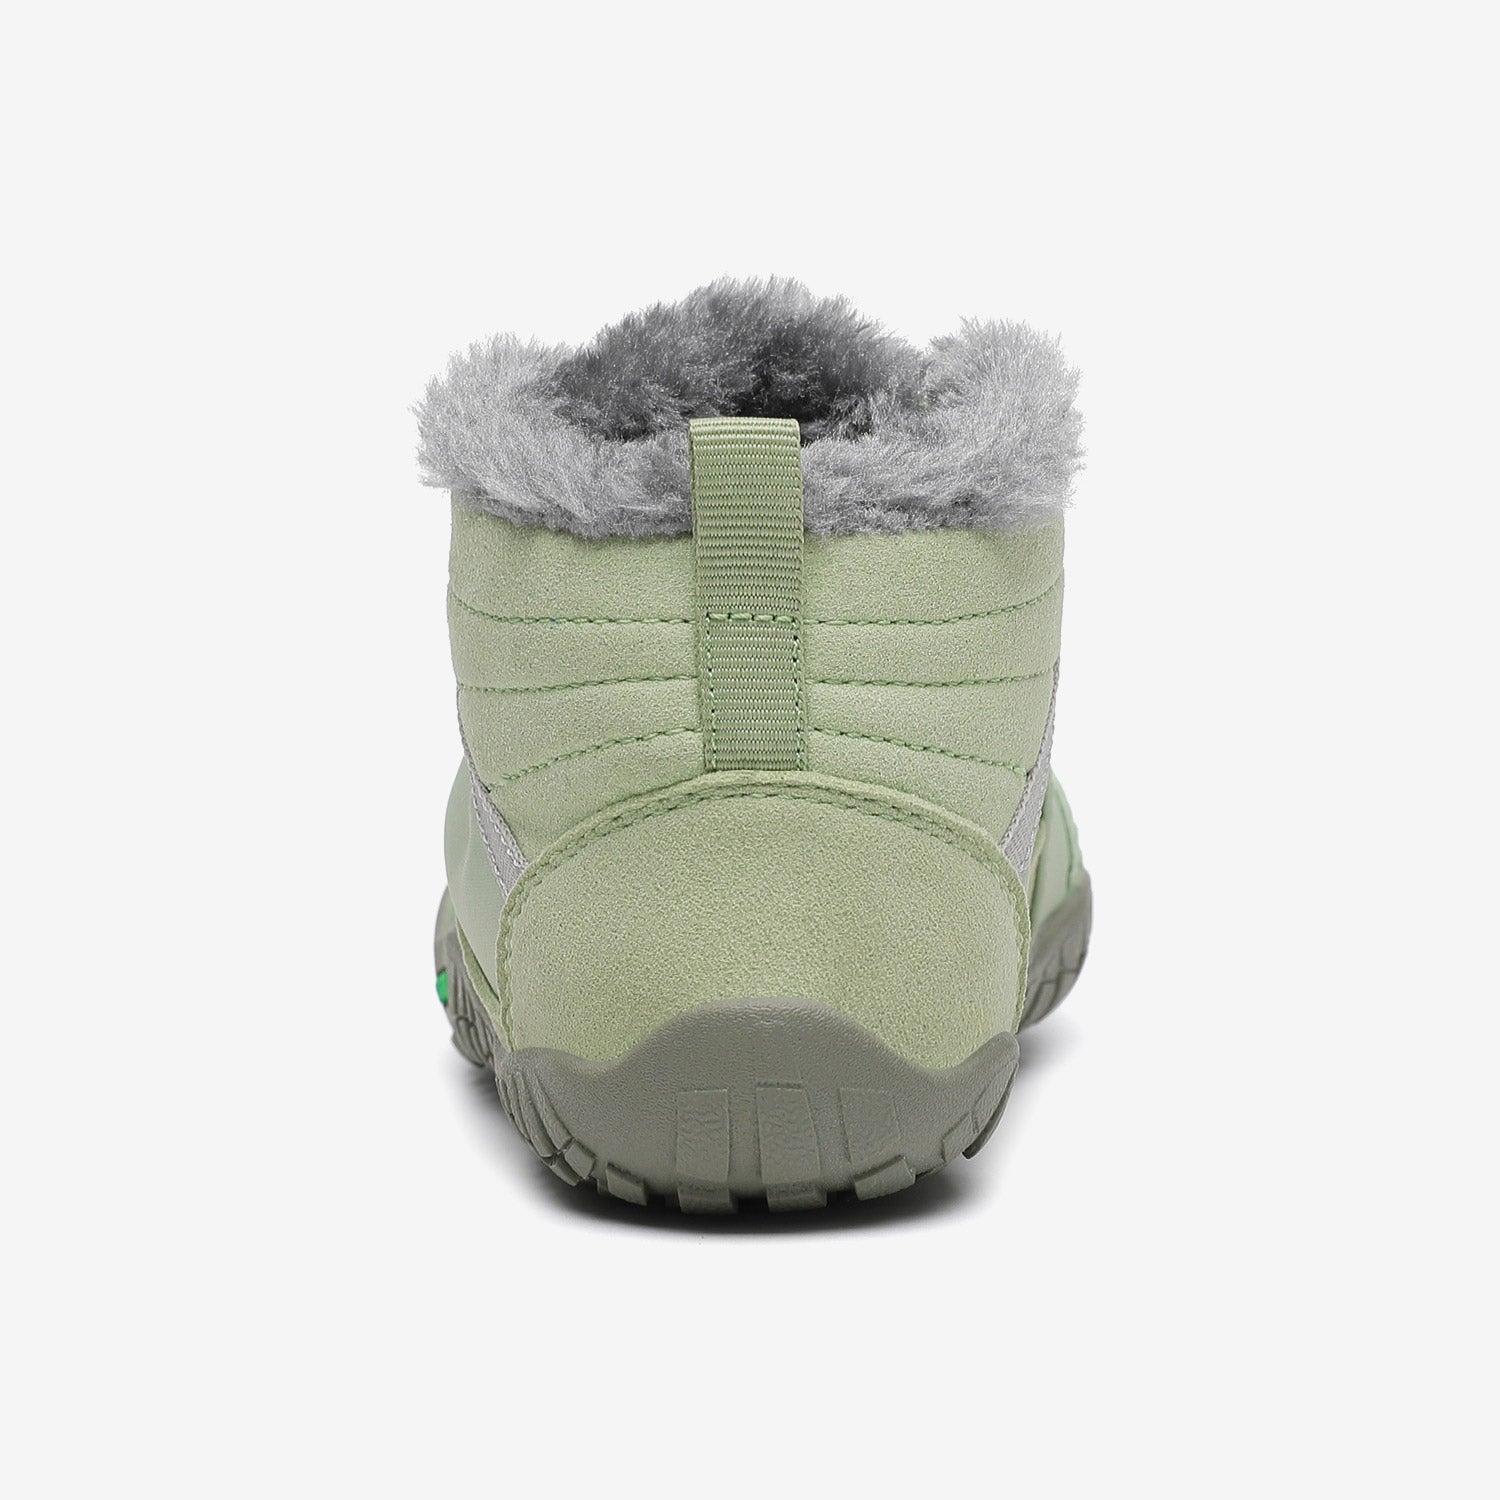 Kids Will Ⅰ - Sapatos Descalços de Inverno